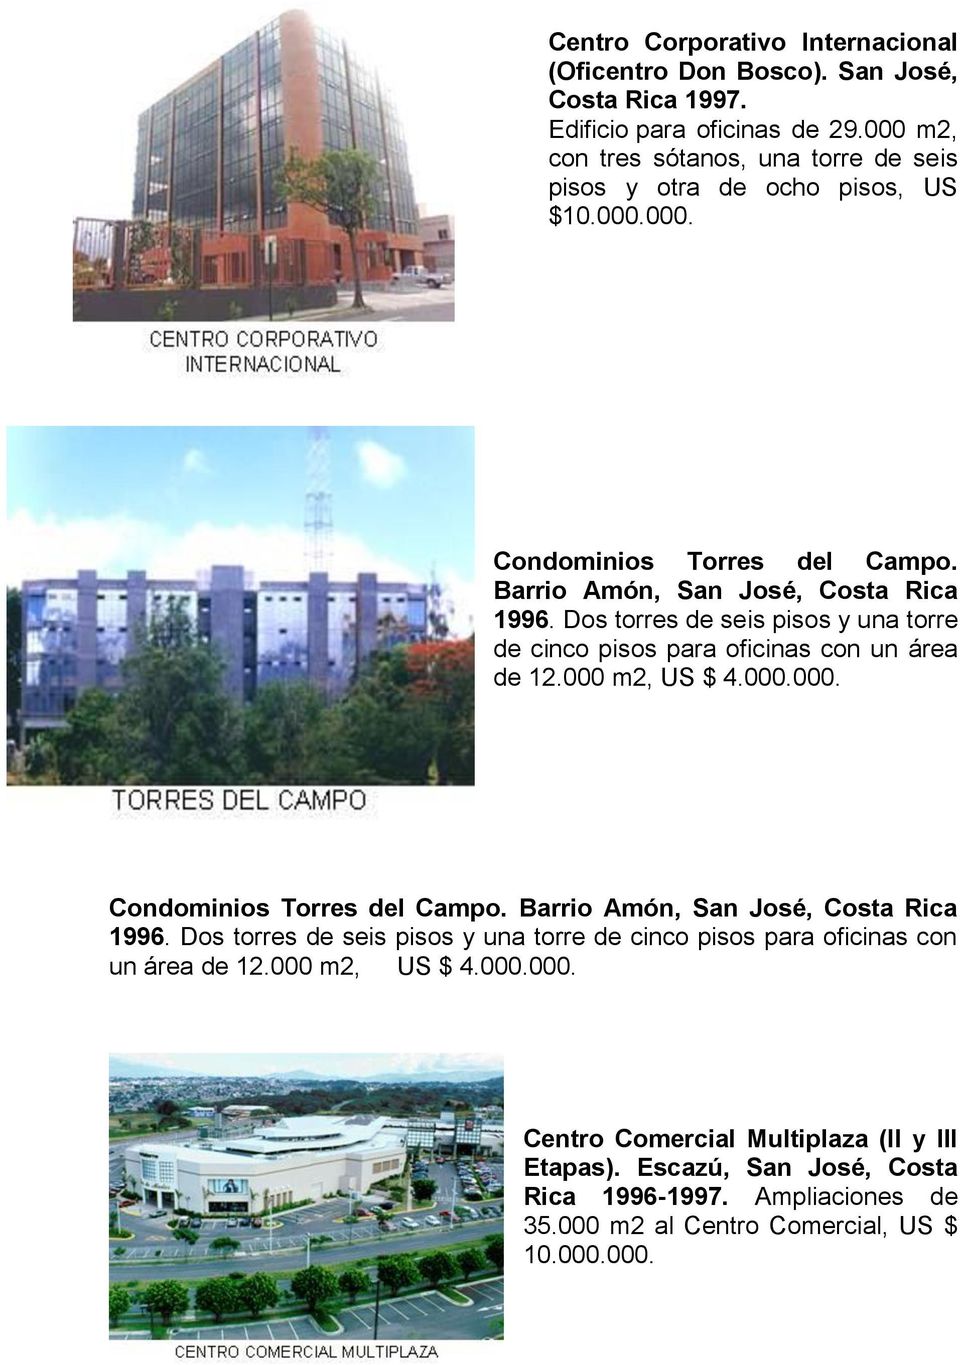 Dos torres de seis pisos y una torre de cinco pisos para oficinas con un área de 12.000 m2, US $ 4.000.000. Condominios Torres del Campo. Barrio Amón, San José, Costa Rica 1996.